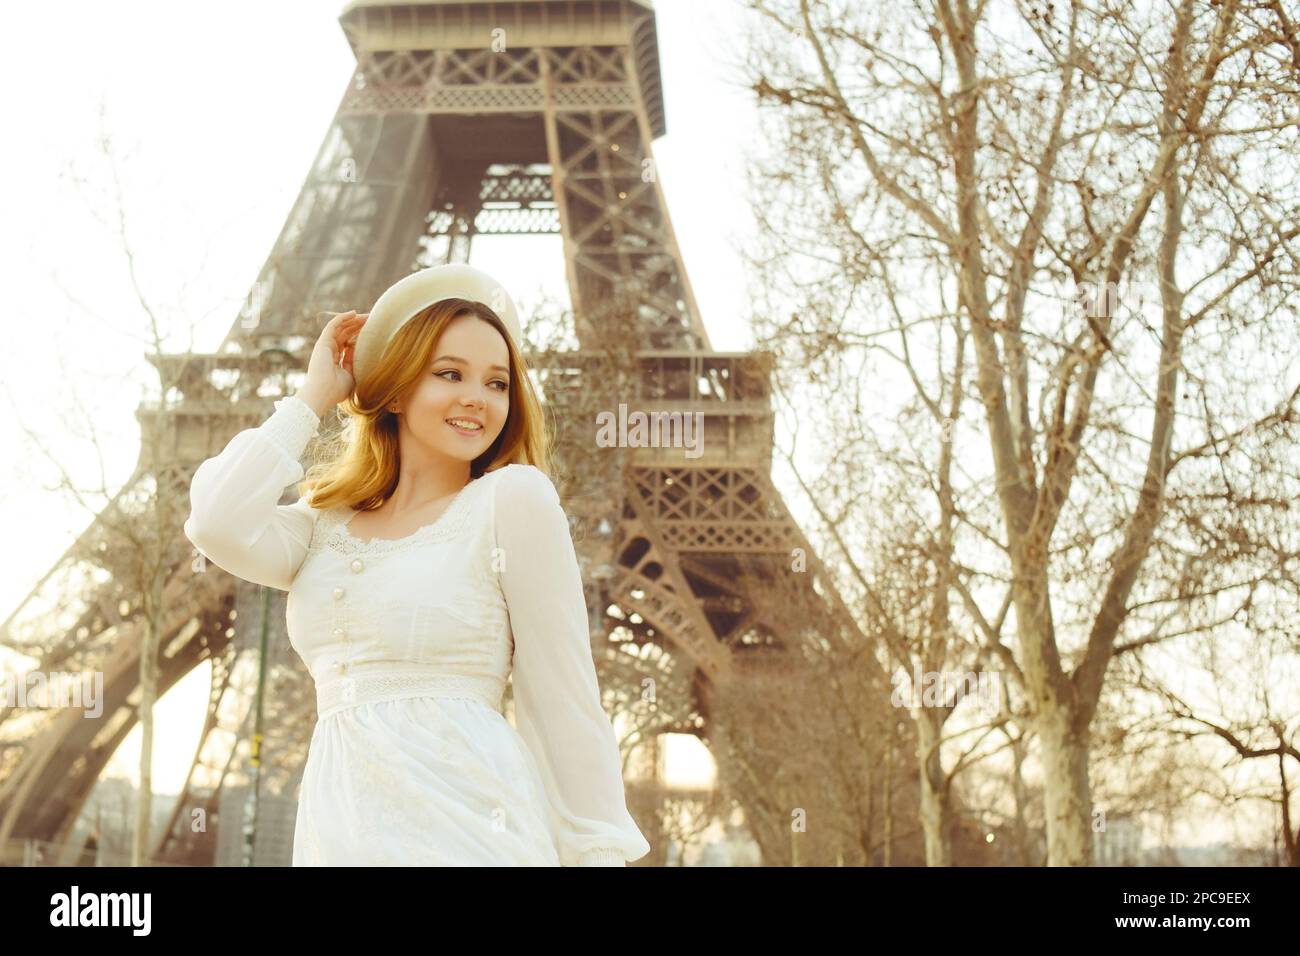 Ein Mädchen vor der Kulisse des Eiffelturms in Paris in einer Baskenmütze und einem Kleid mit lockigem Haar, eine romantische Reise. Eine Frau, die lacht und wegschaut Stockfoto